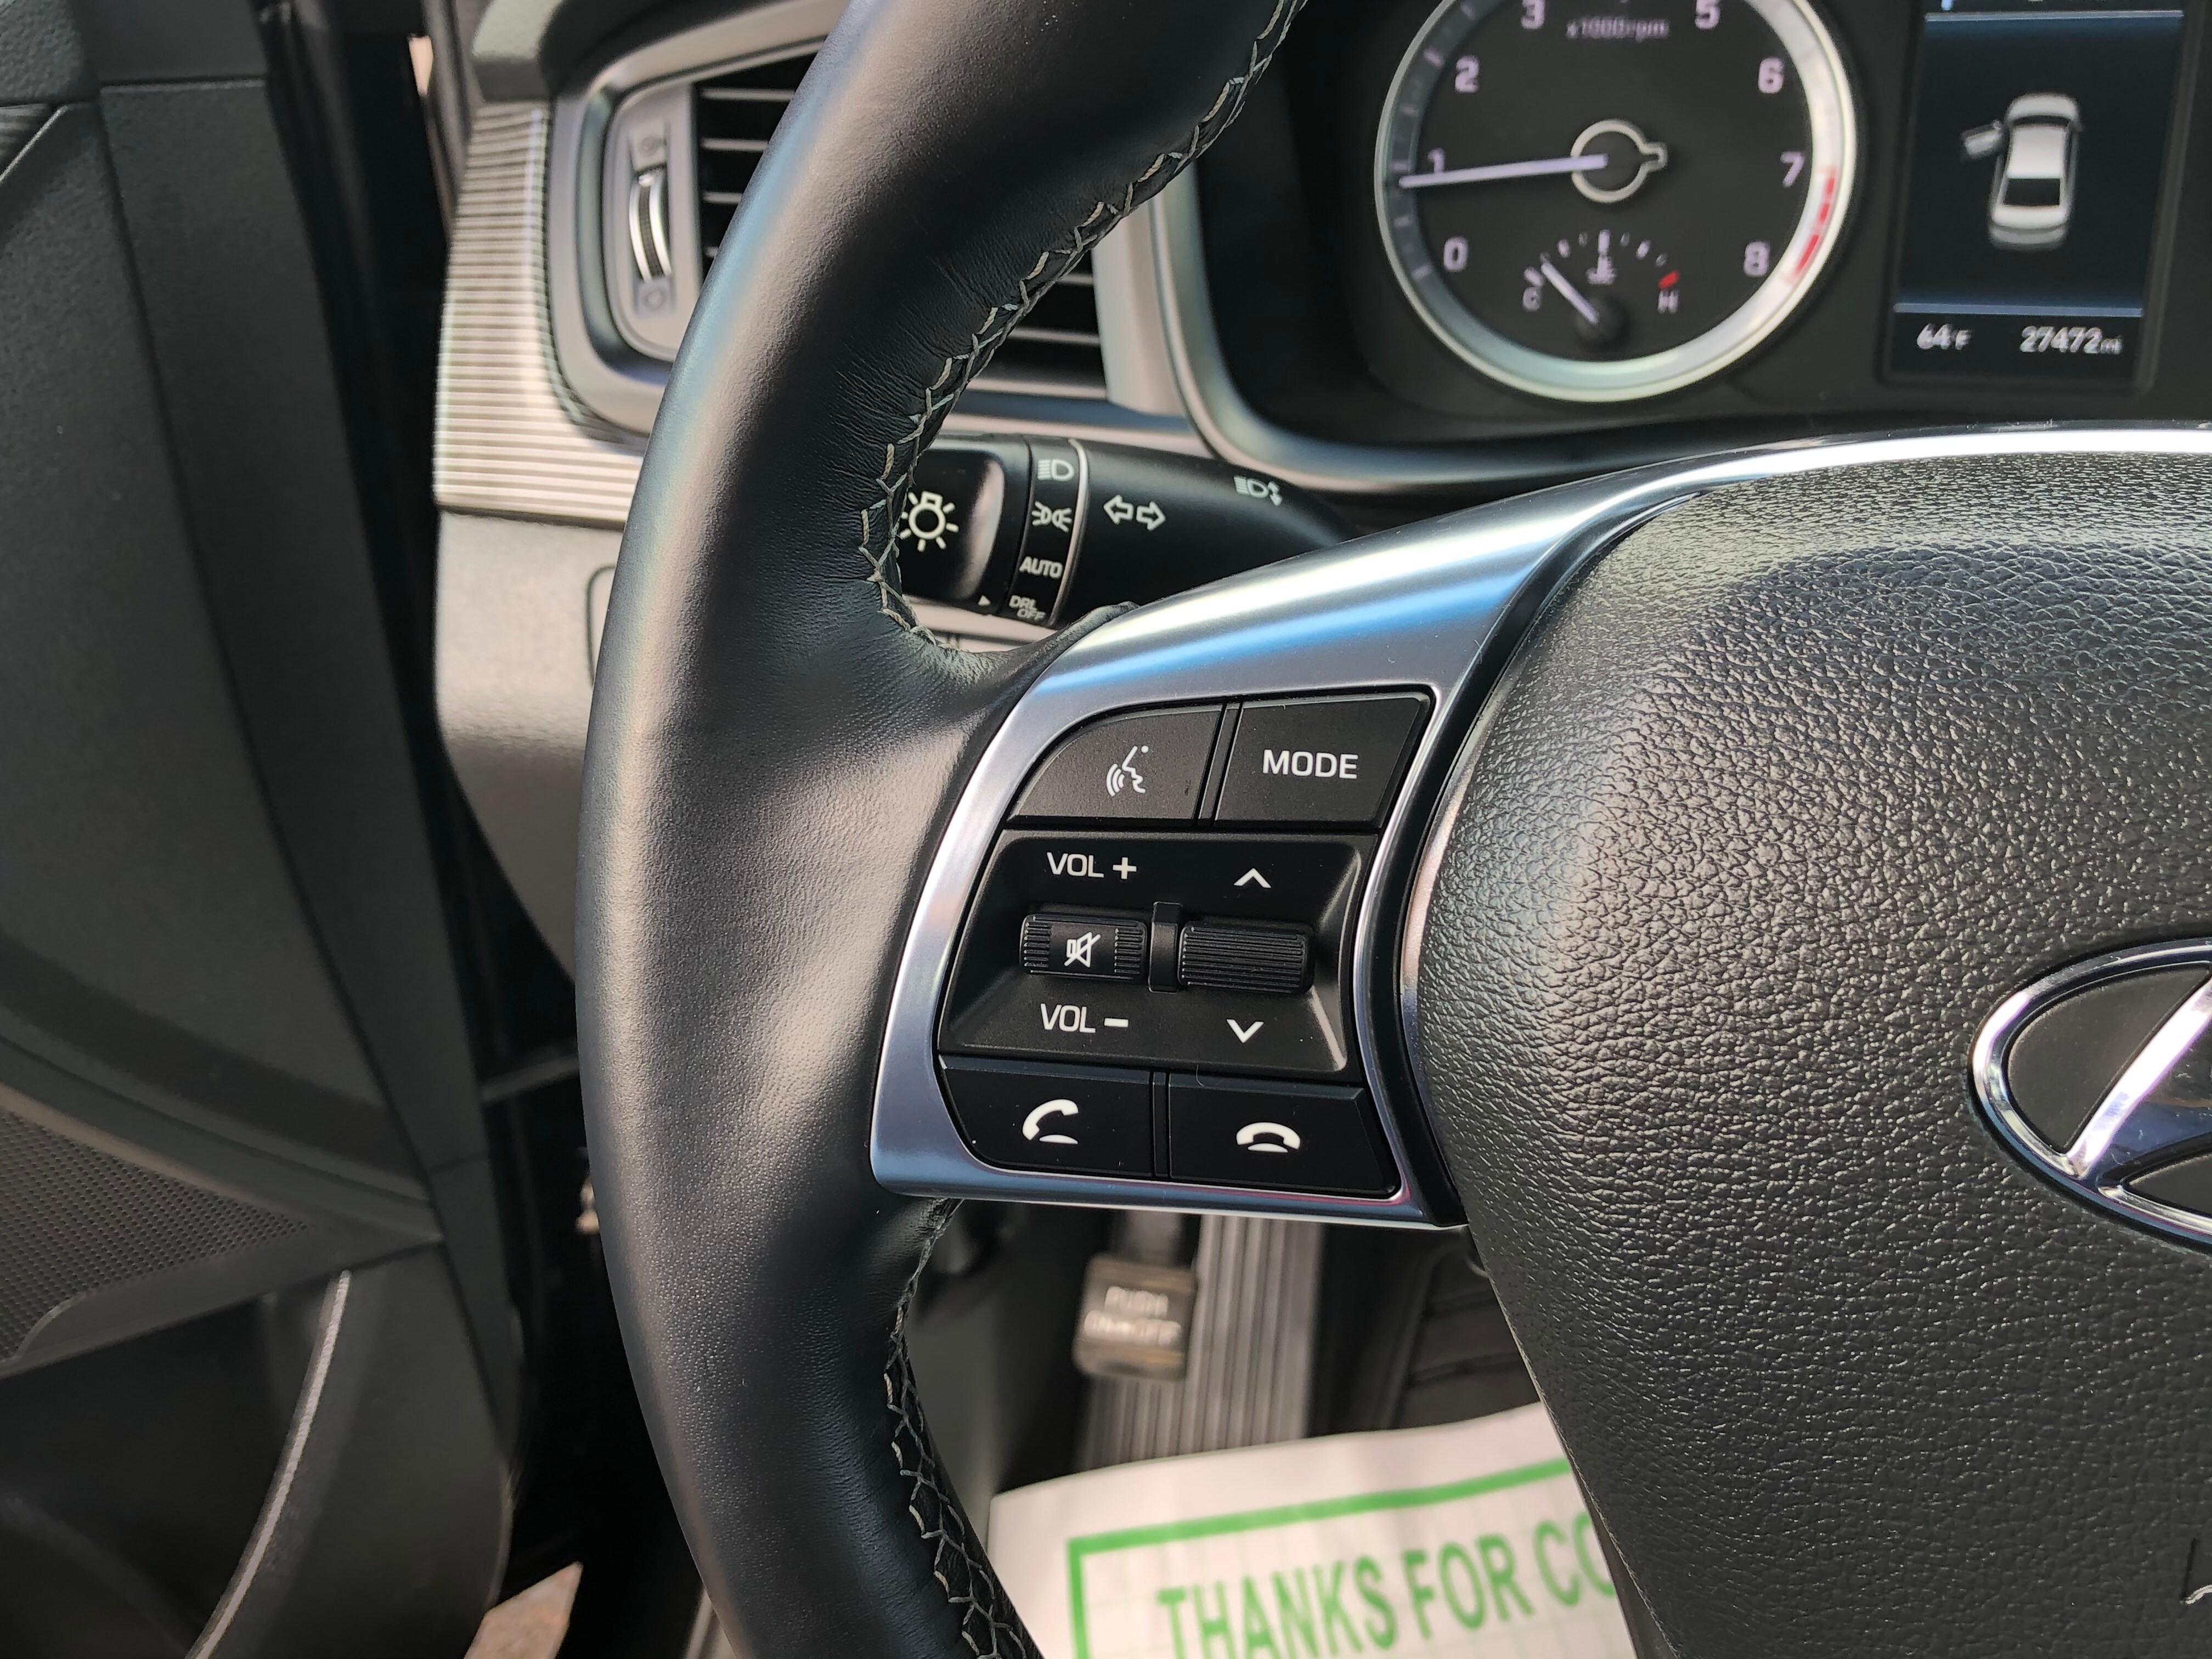 PreOwned 2018 Hyundai Sonata Limited w/SULEV FWD Sedan